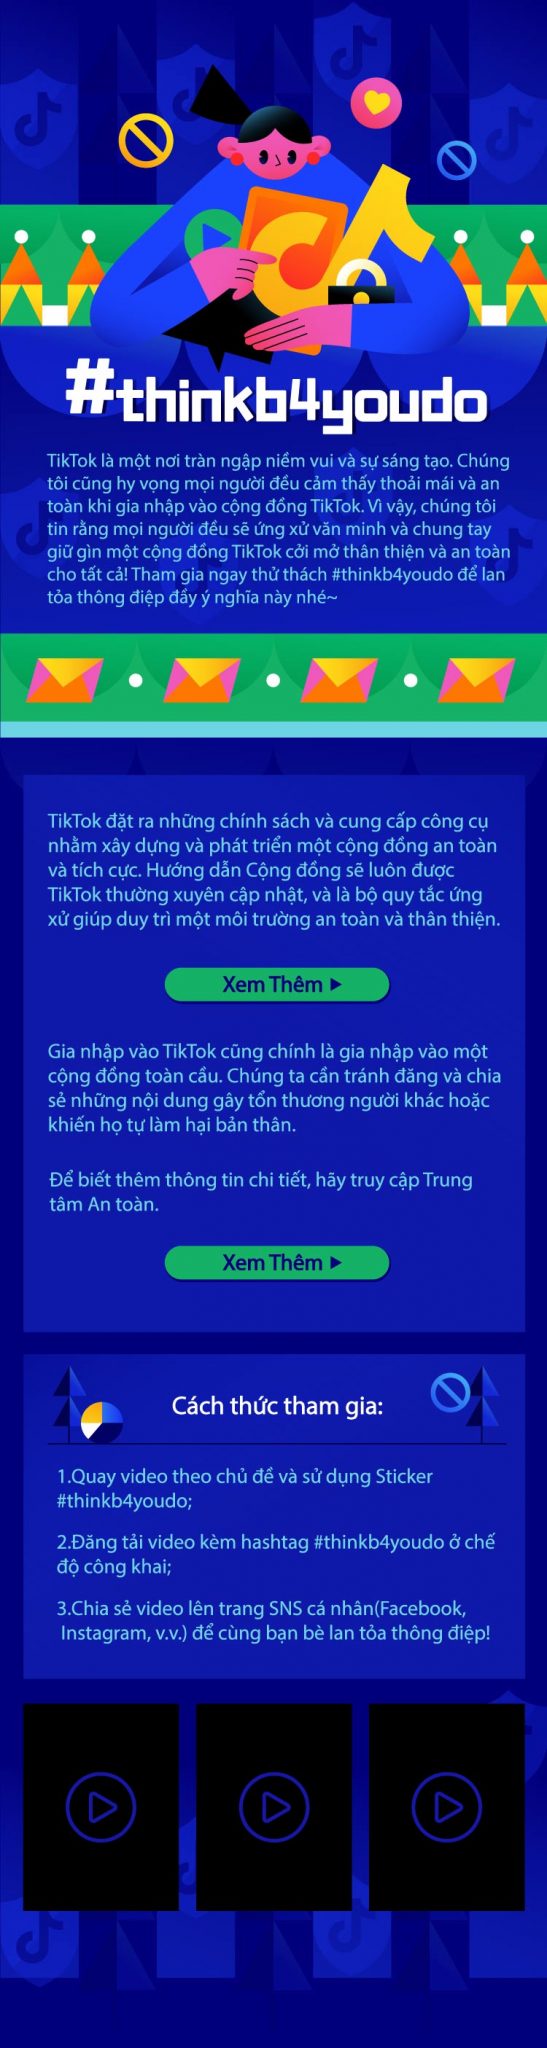 TikTok ra mắt chiến dịch #thinkb4youdo kêu gọi mọi người chung tay vì một cộng đồng mạng thân thiện và an toàn